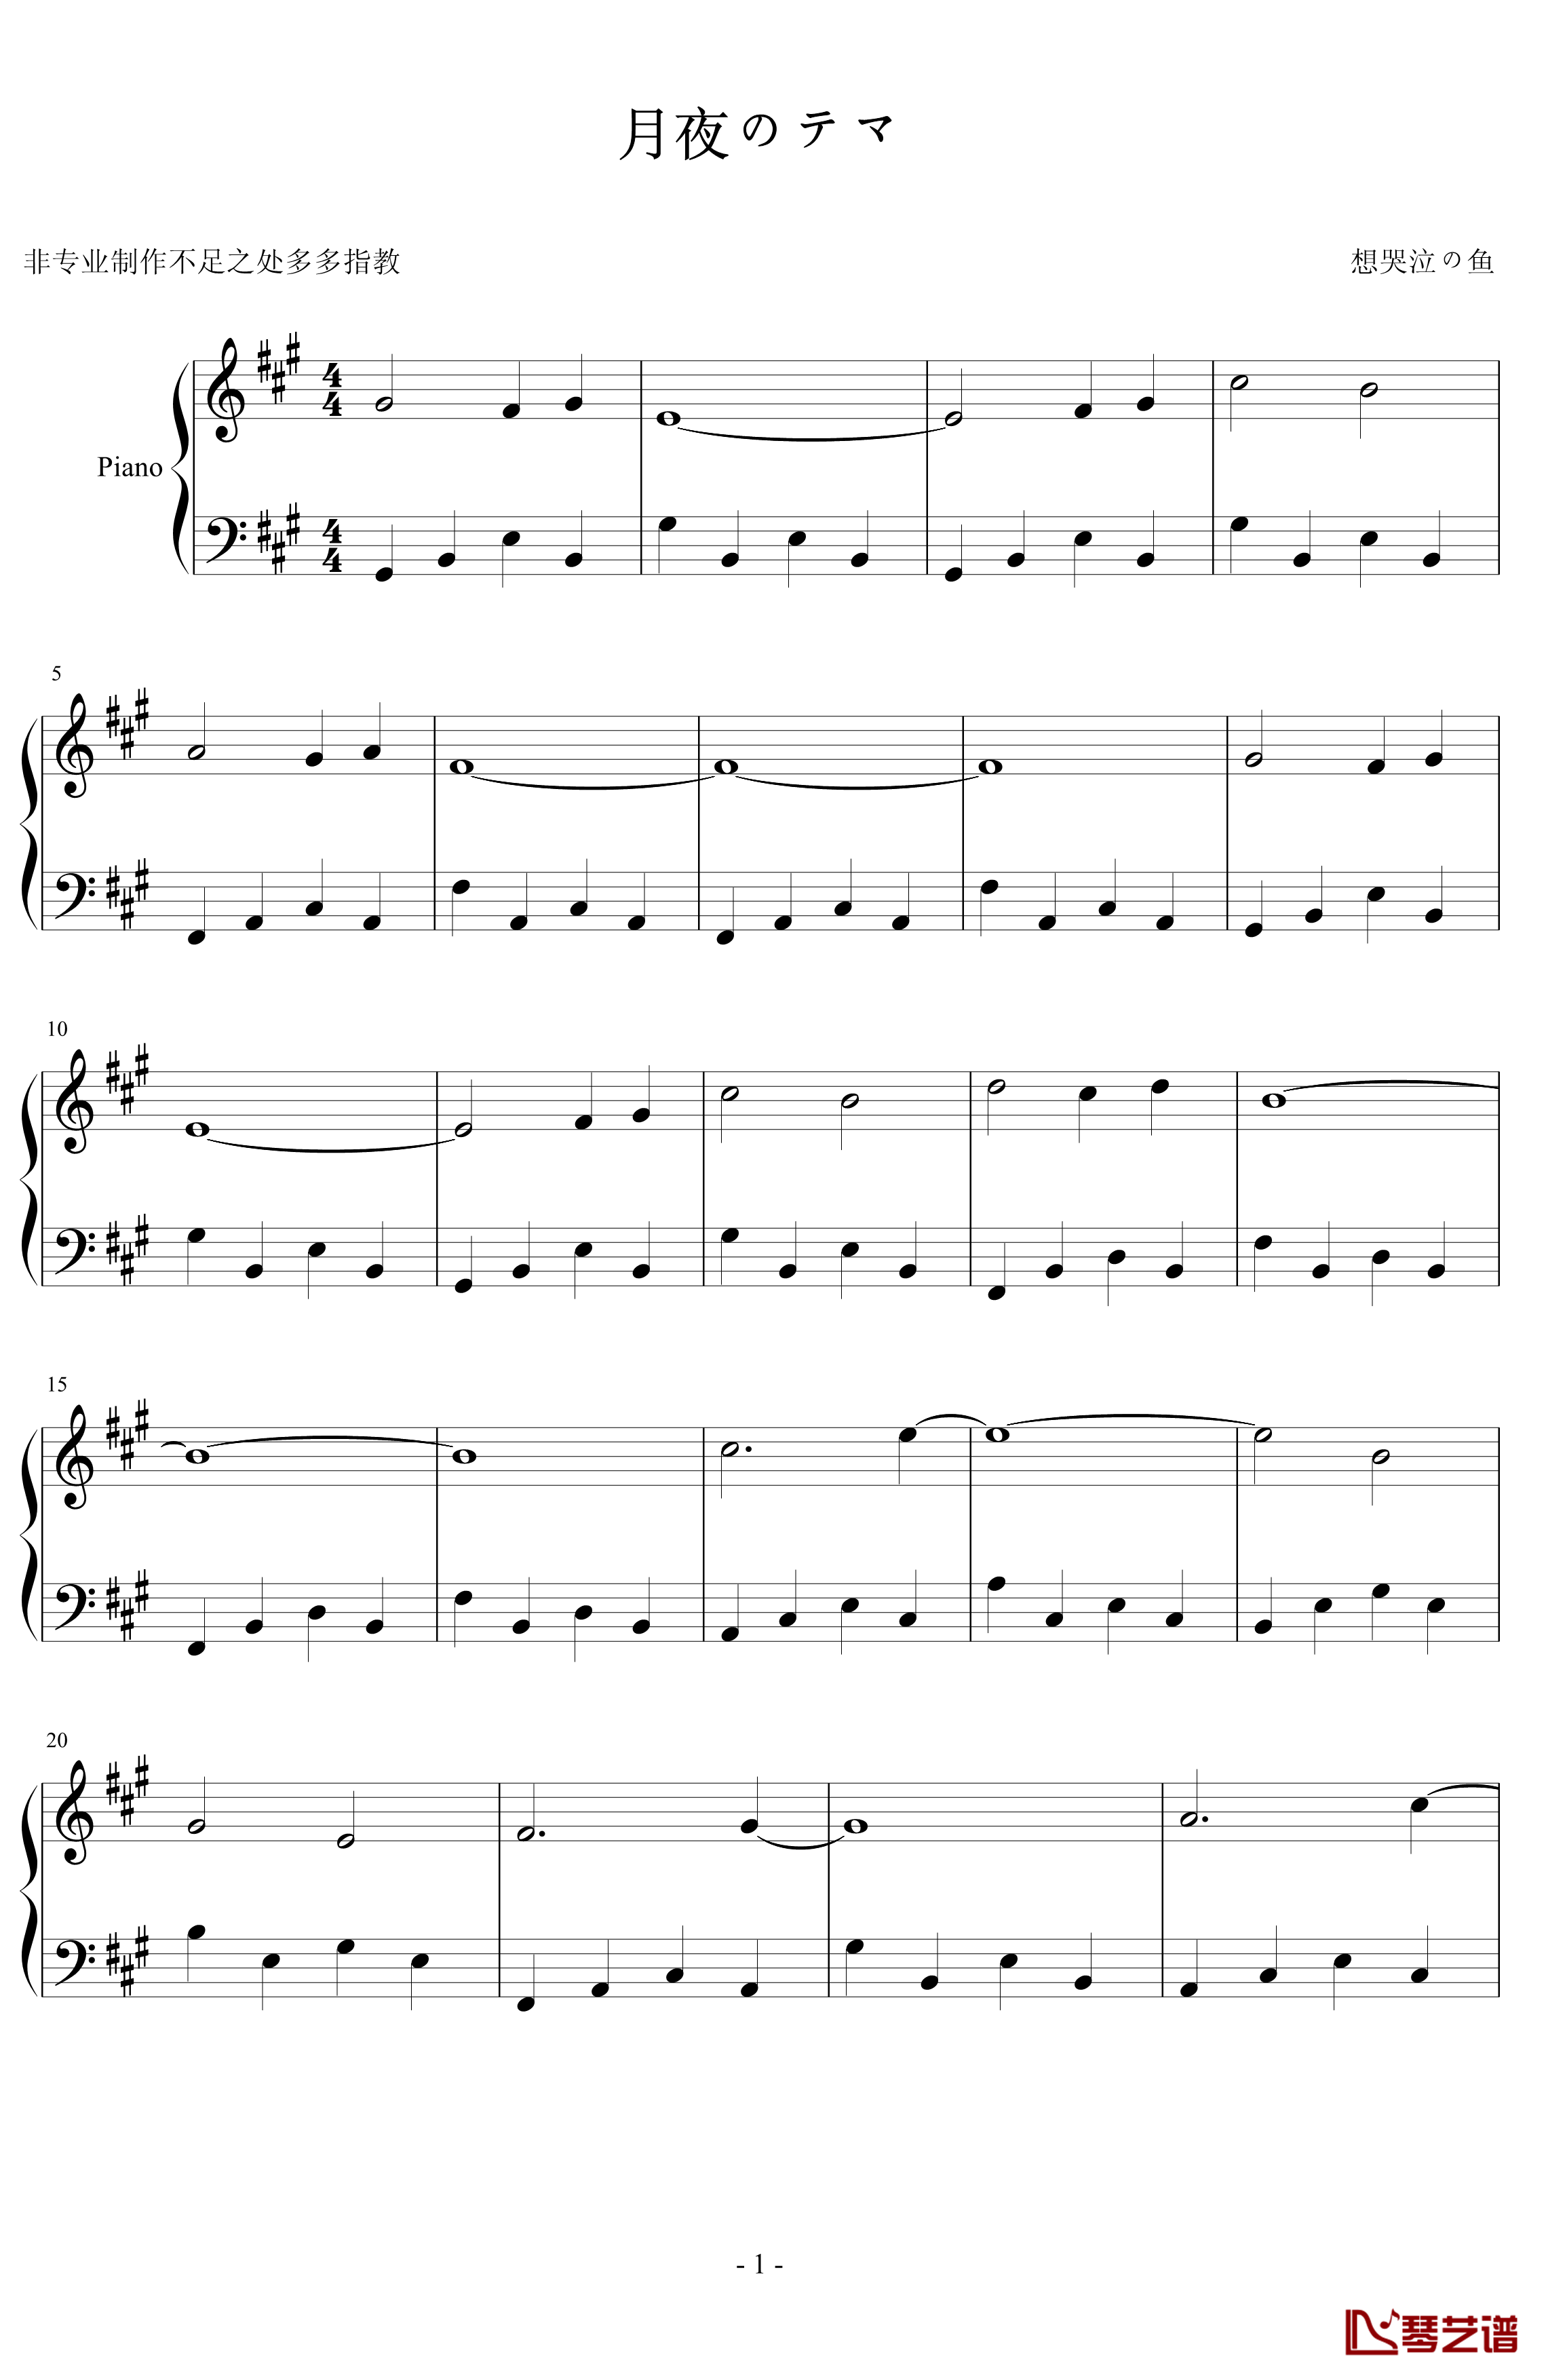 月夜のテマ钢琴谱-瞎编版-名侦探柯南-柯南的一小段插曲1